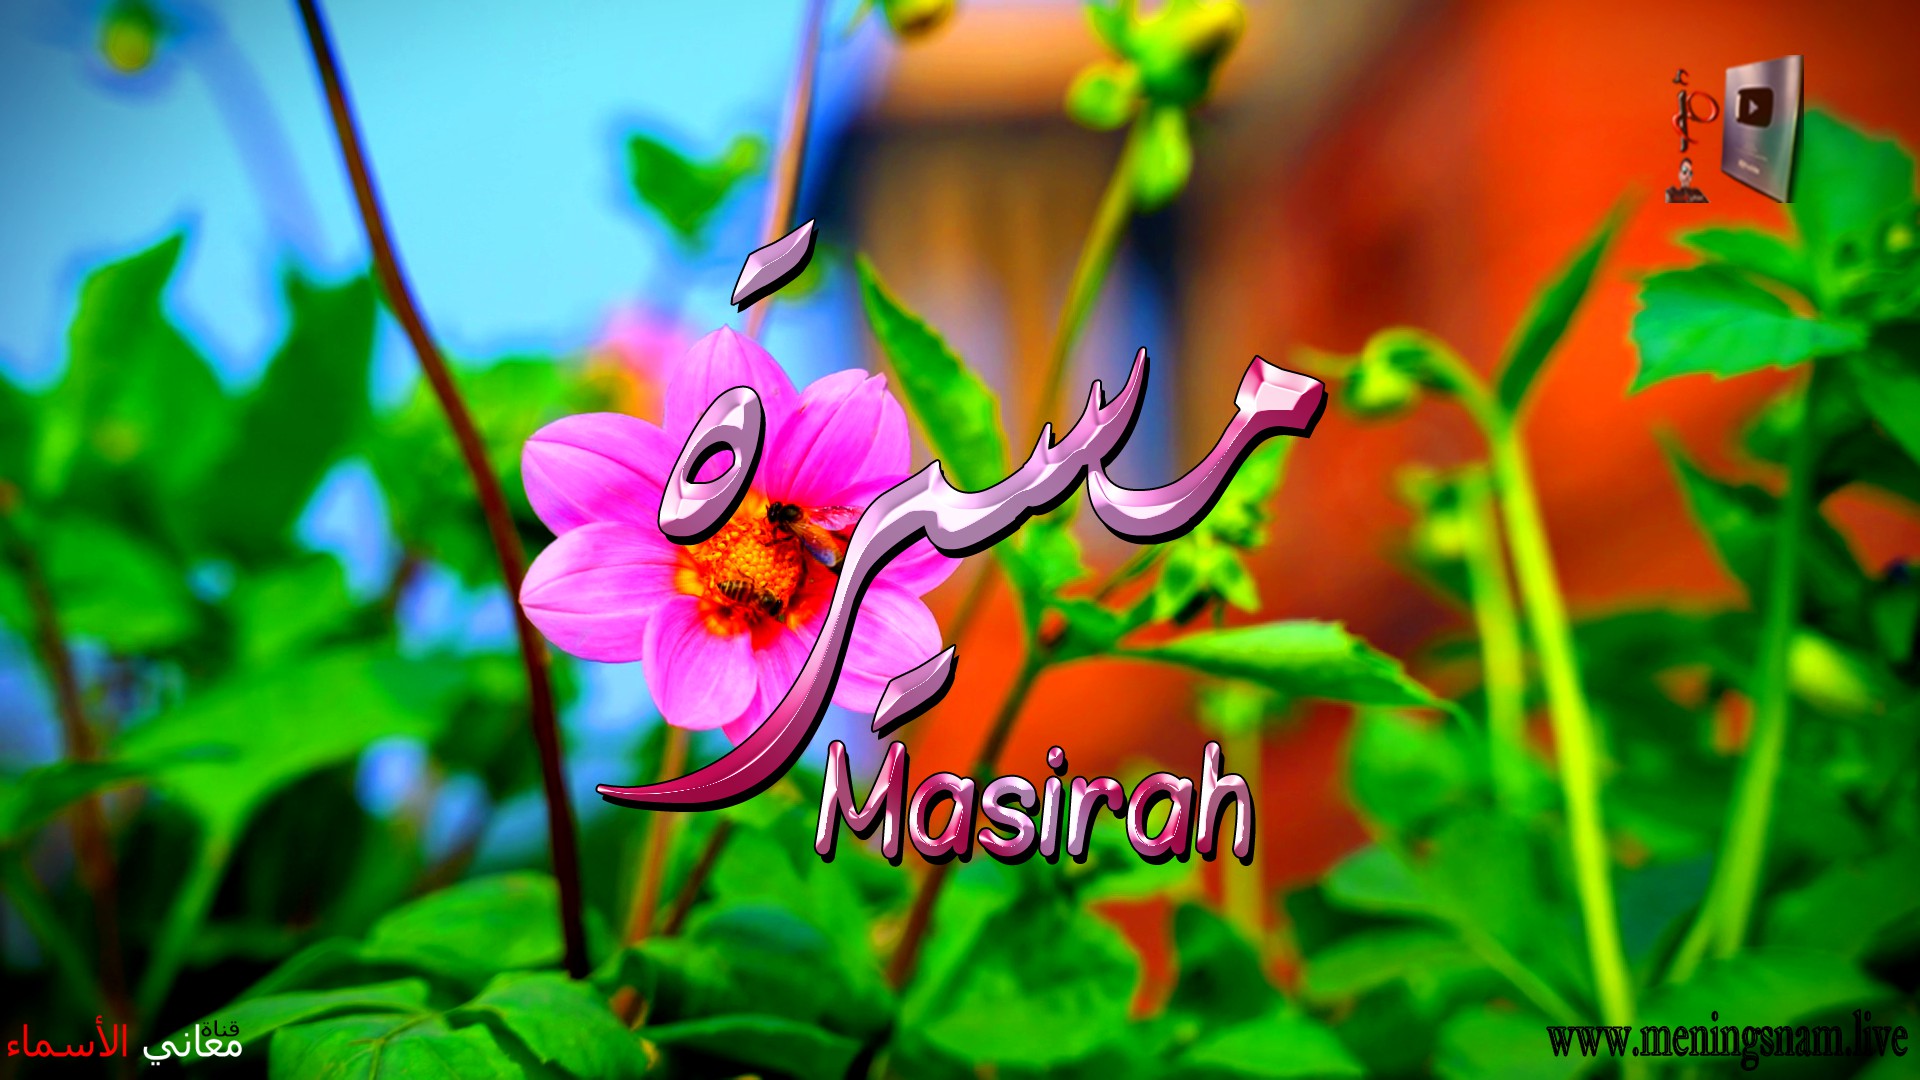 معنى اسم, مسيرة, وصفات, حاملة, هذا الاسم, Masirah,